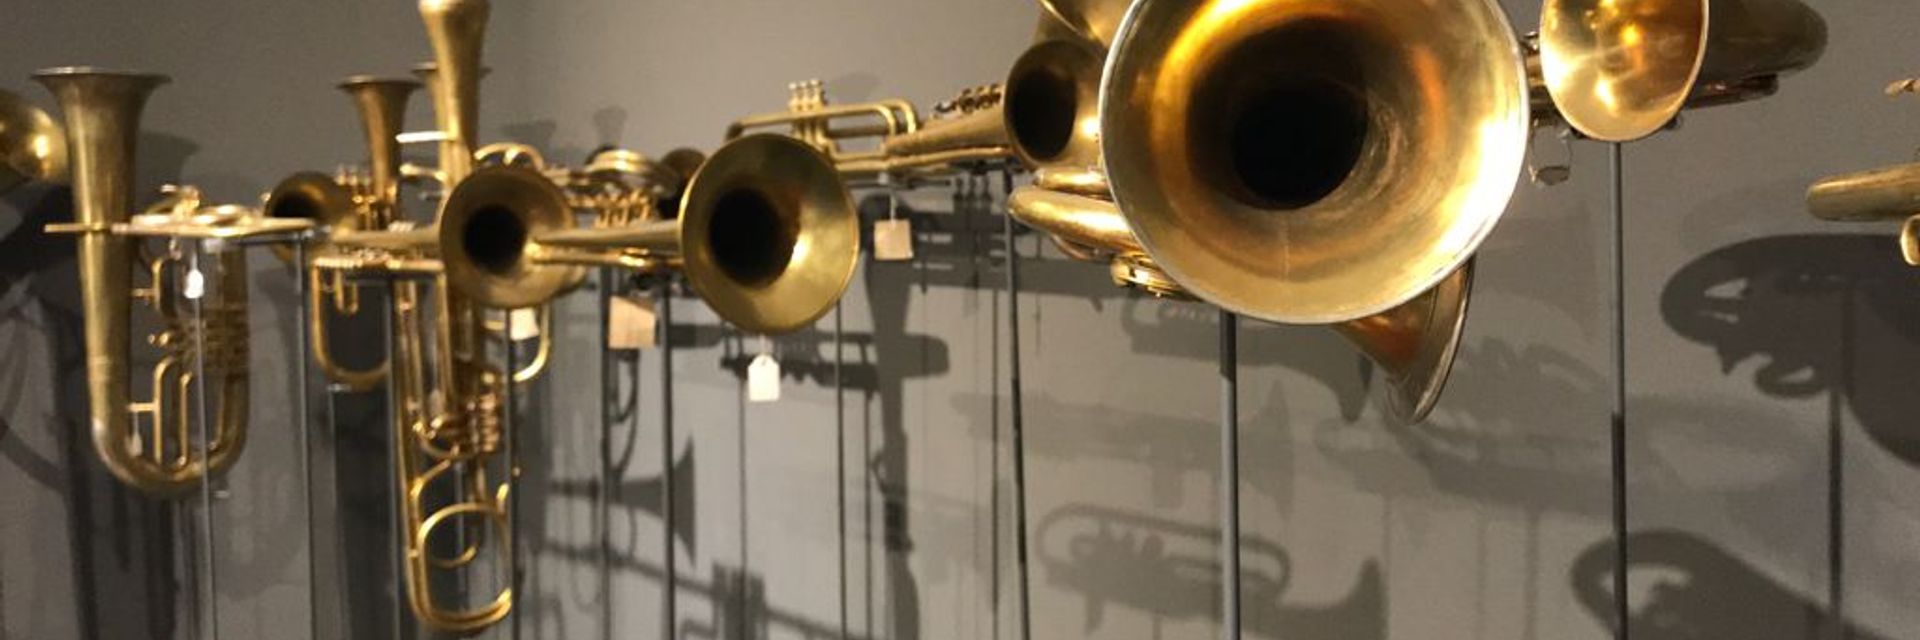 Museo Nacional de Instrumentos Musicales